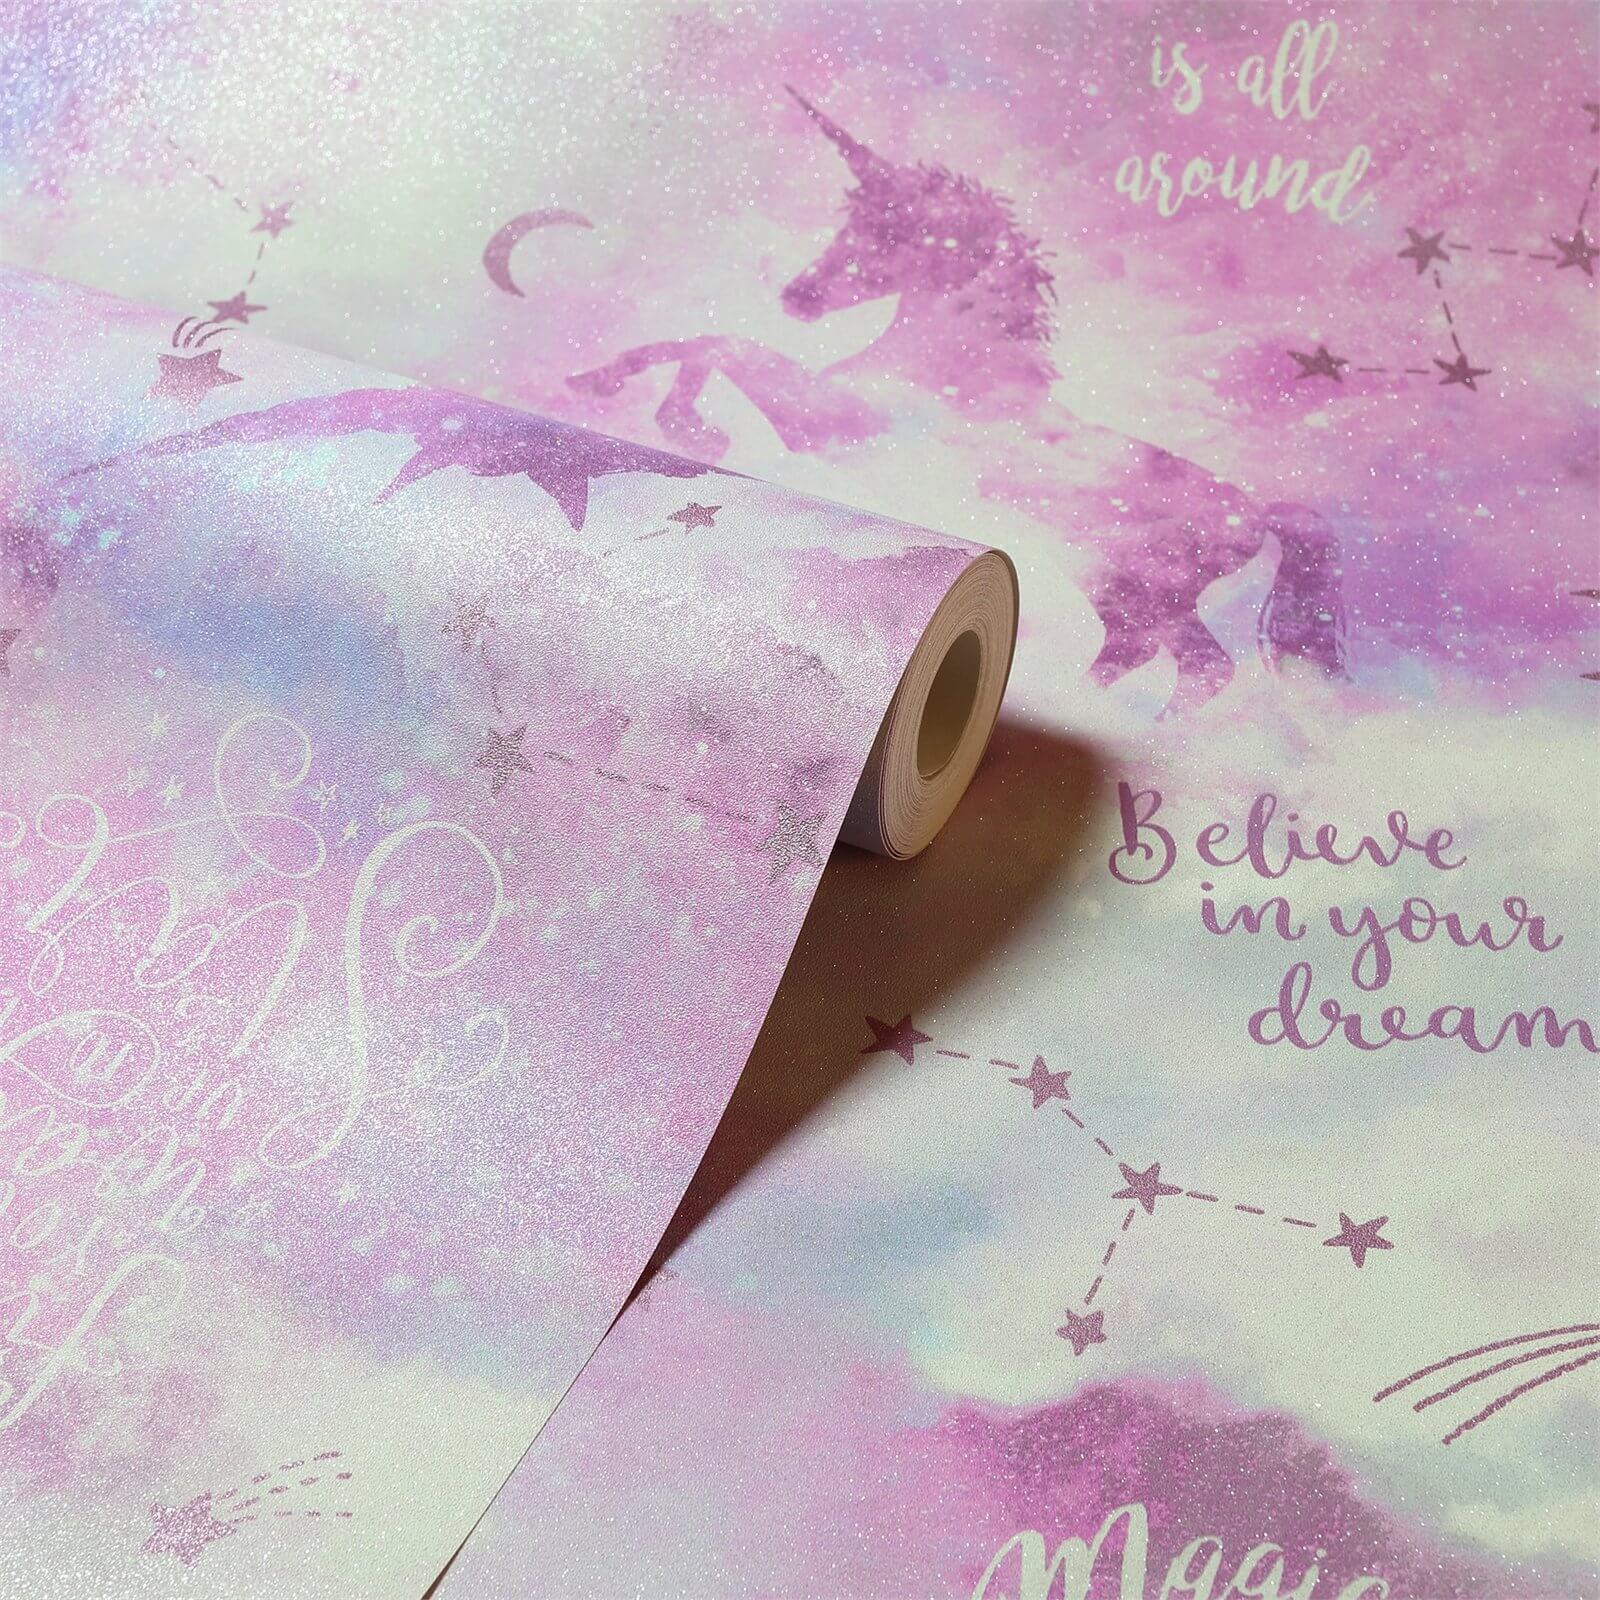 Arthouse Galaxy Unicorn Kids Textured Glitter Blush Pink Wallpaper